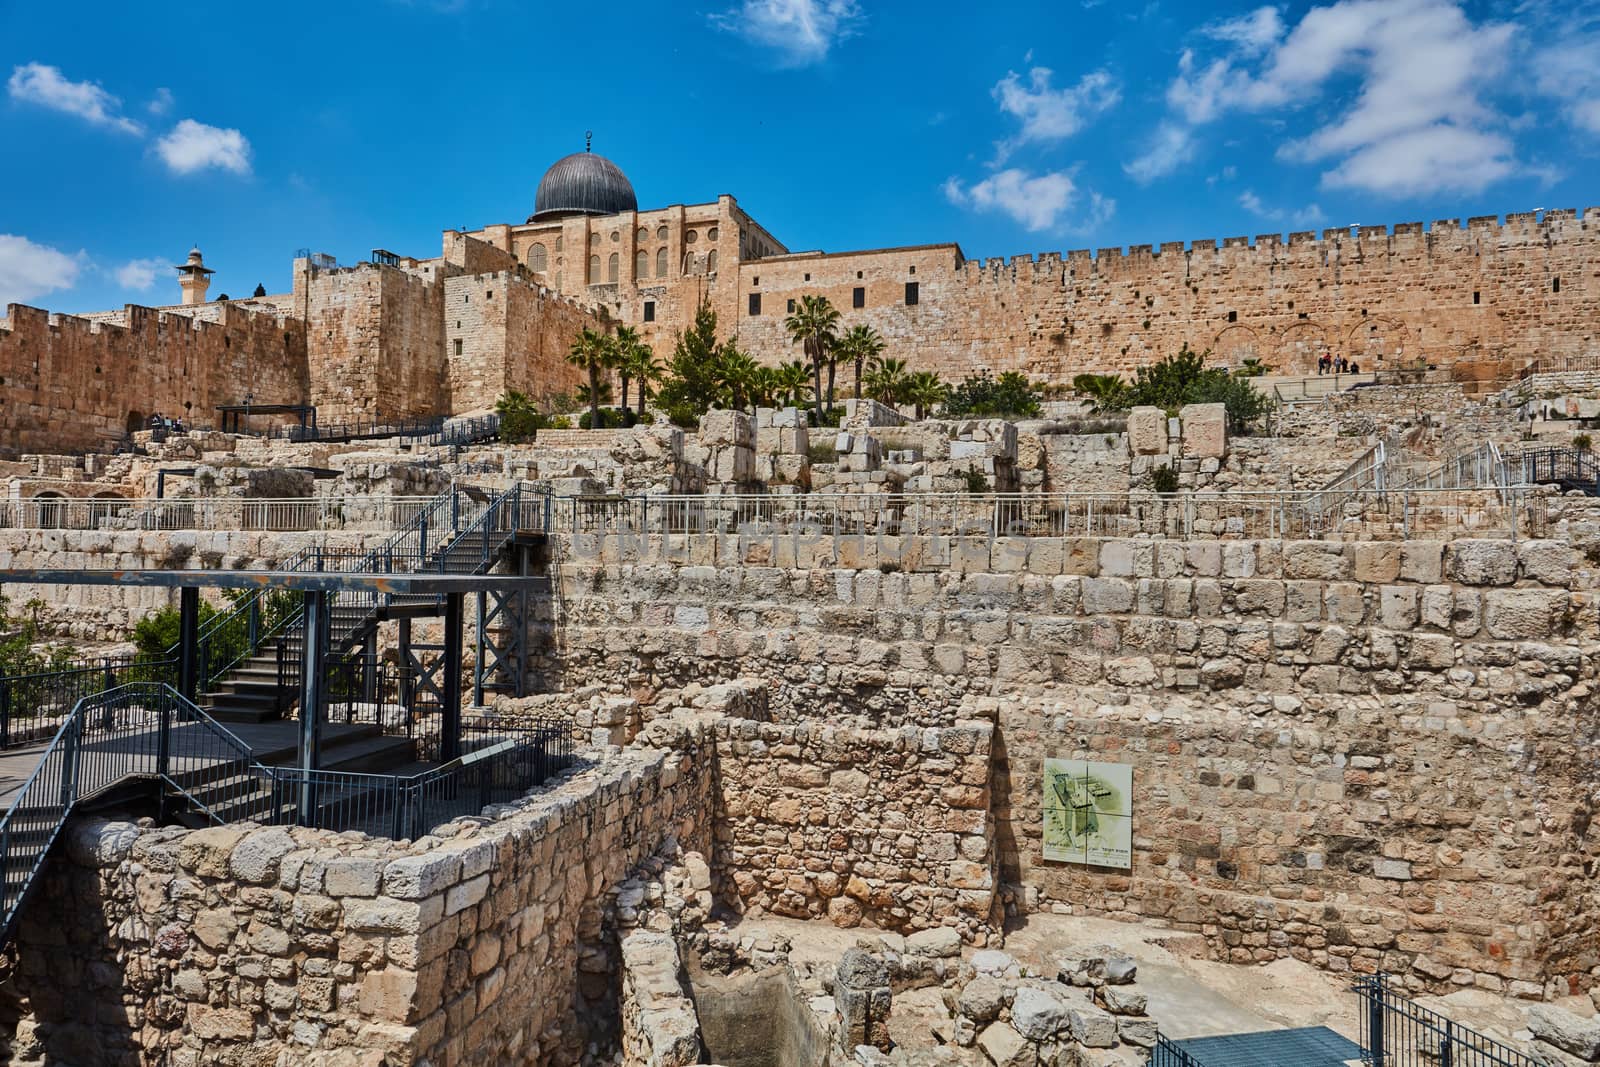 Jerusalem - city of David excavations